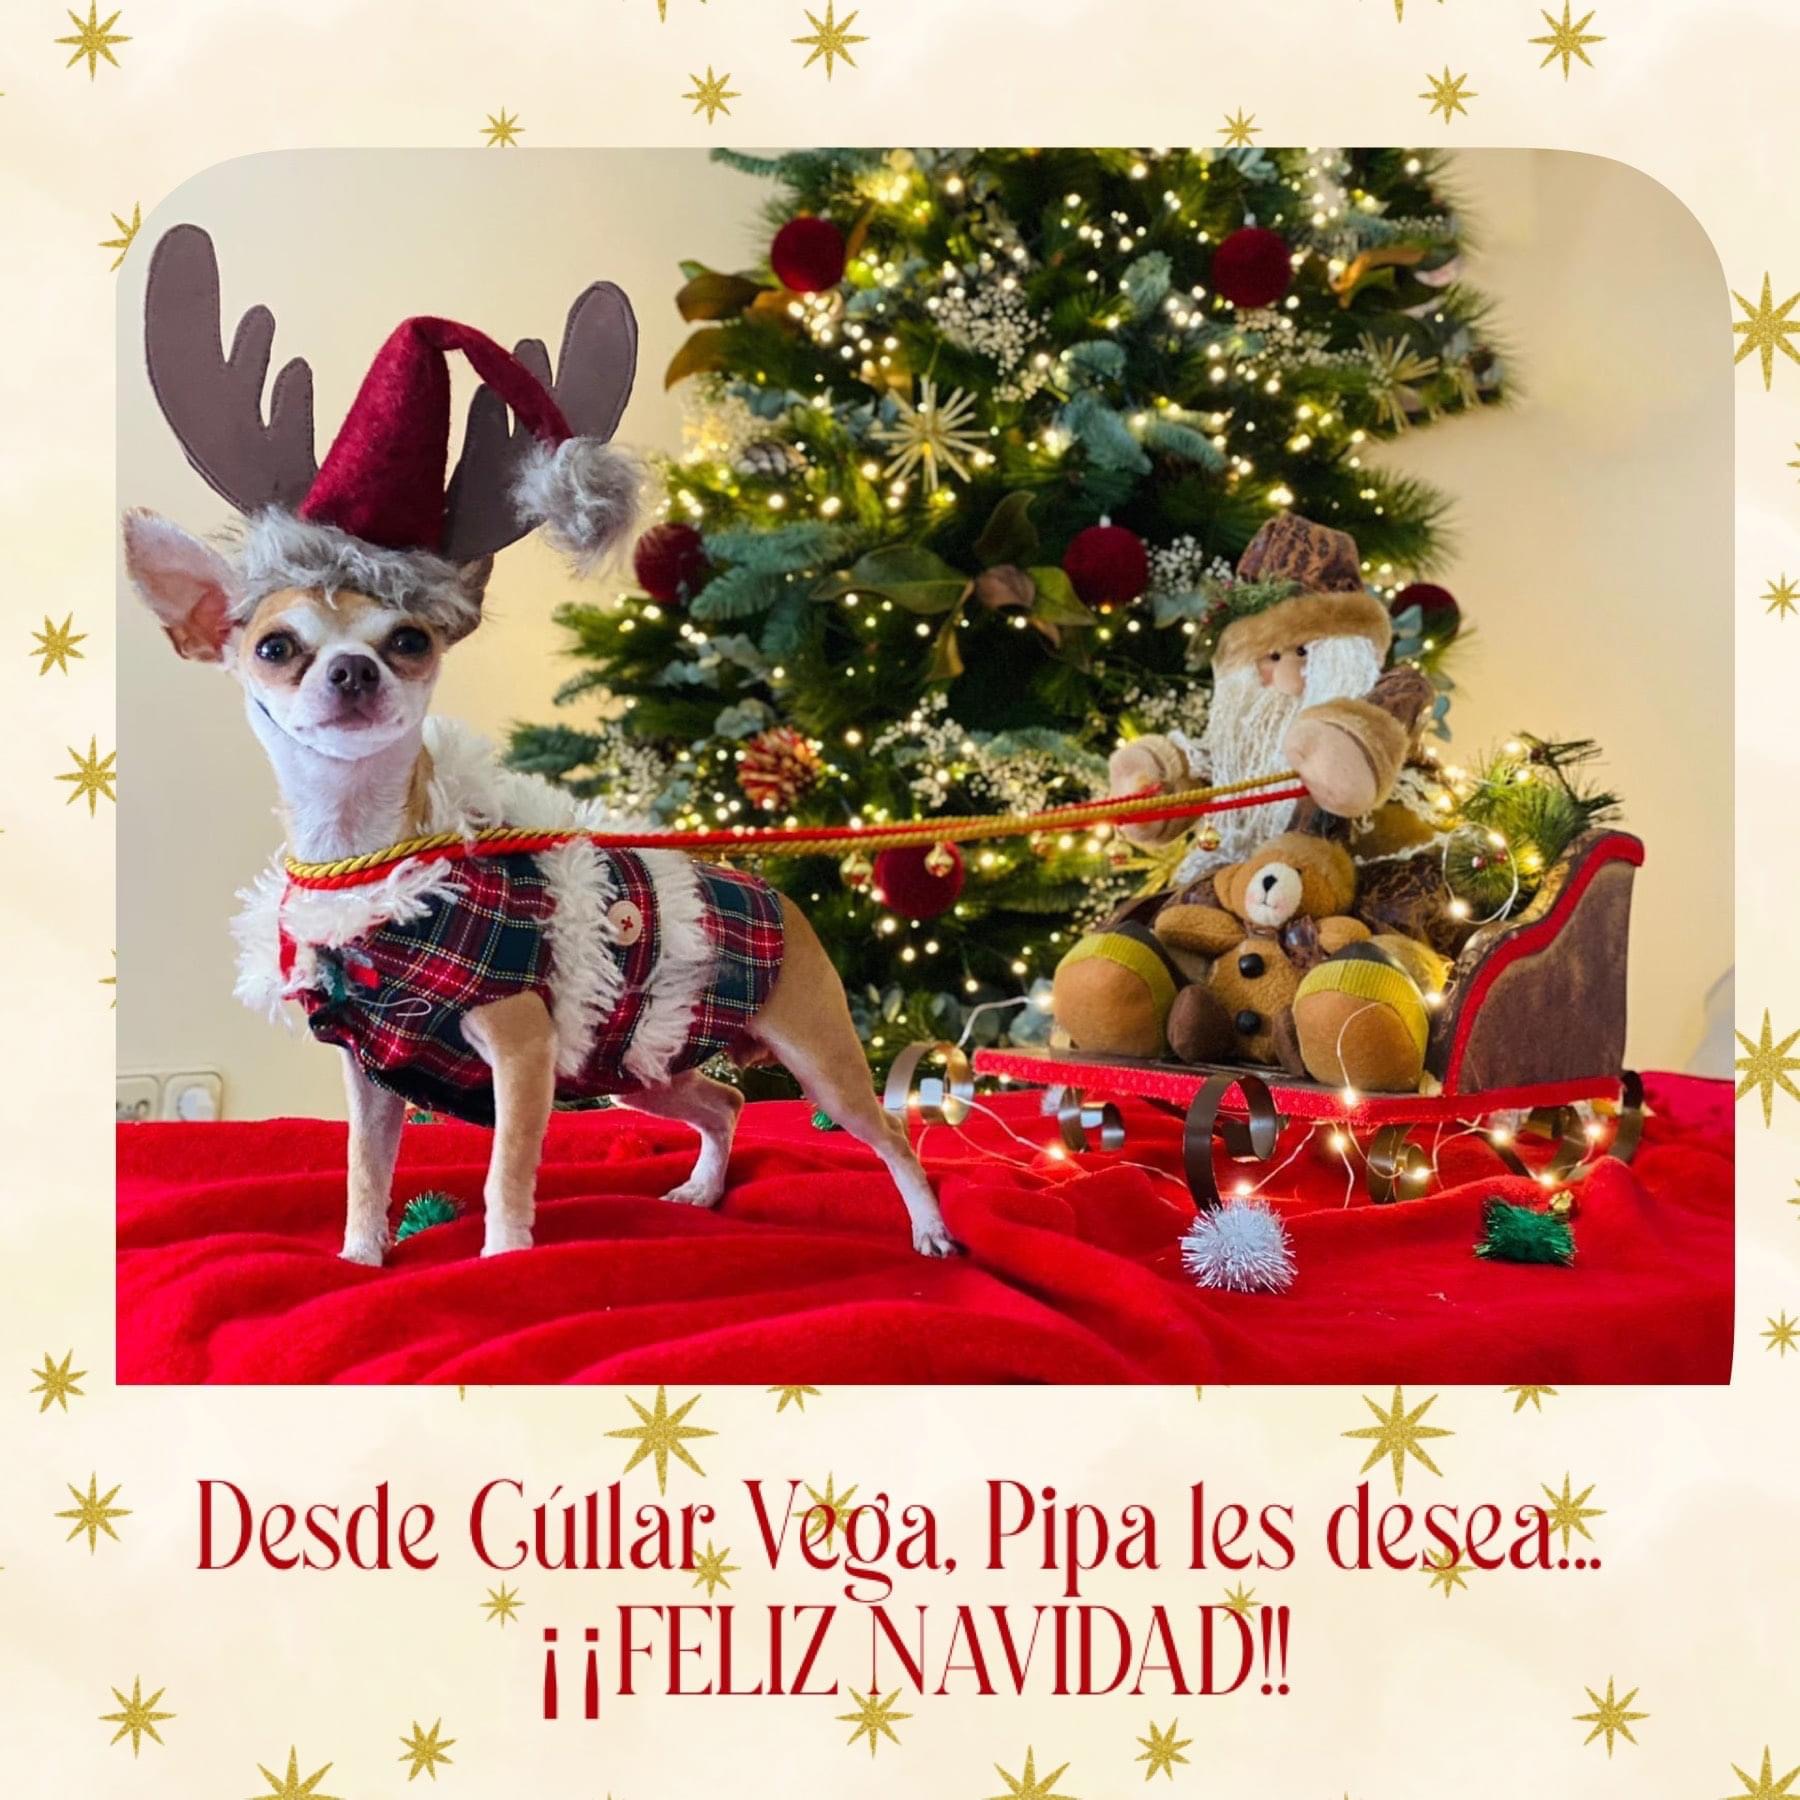 Cúllar Vega premiará las fotos más divertidas en su II concurso de Christmas de Mascotas